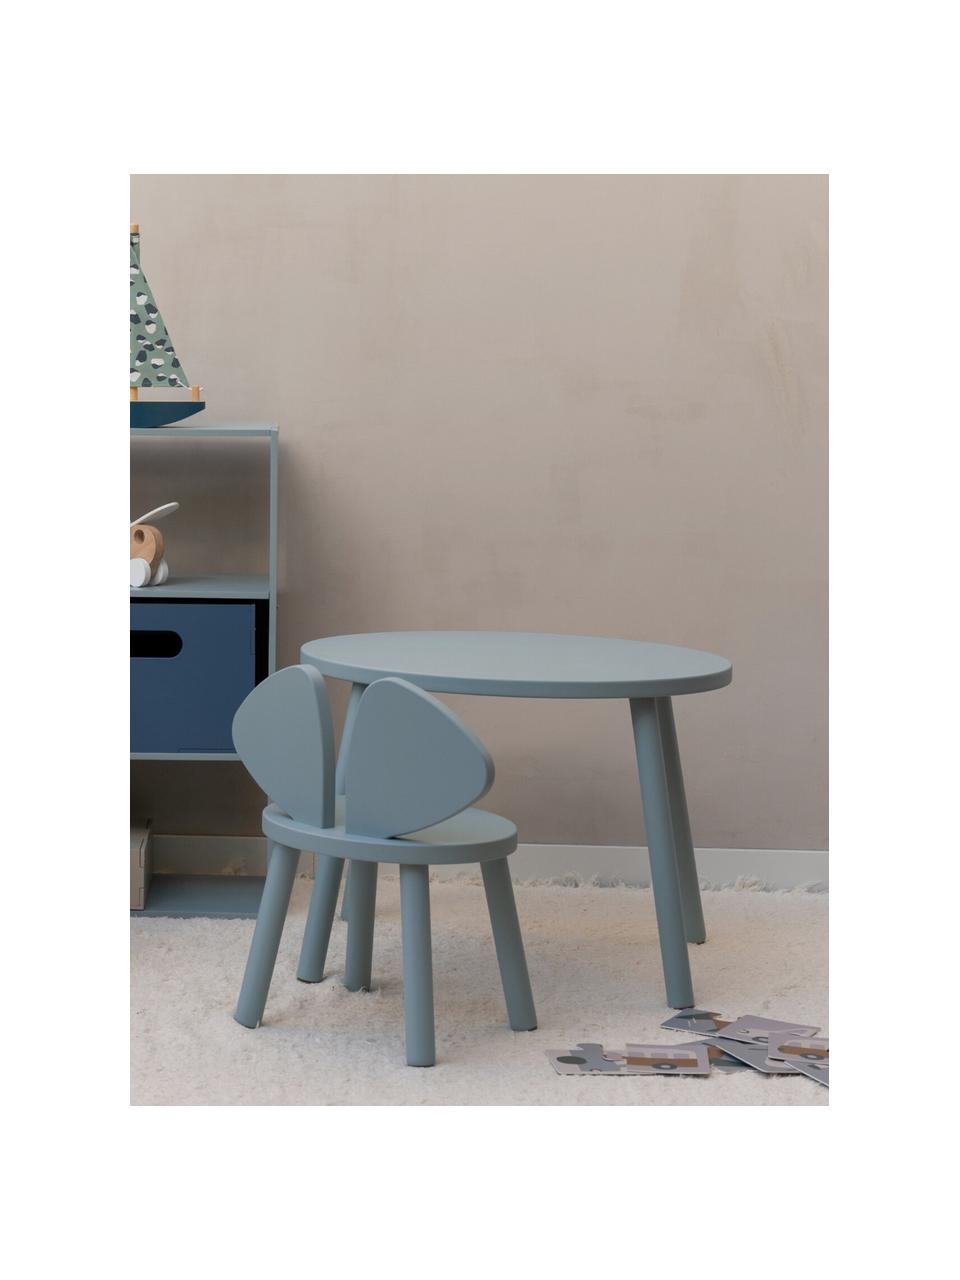 Súprava detského stolíka a stoličky Mouse, 2 diely, Brezová dyha, lakovaná

Tento výrobok je vyrobený z dreva s certifikátom FSC®, ktoré pochádza z udržateľných zdrojov, Šalviová, Súprava s rôznymi veľkosťami